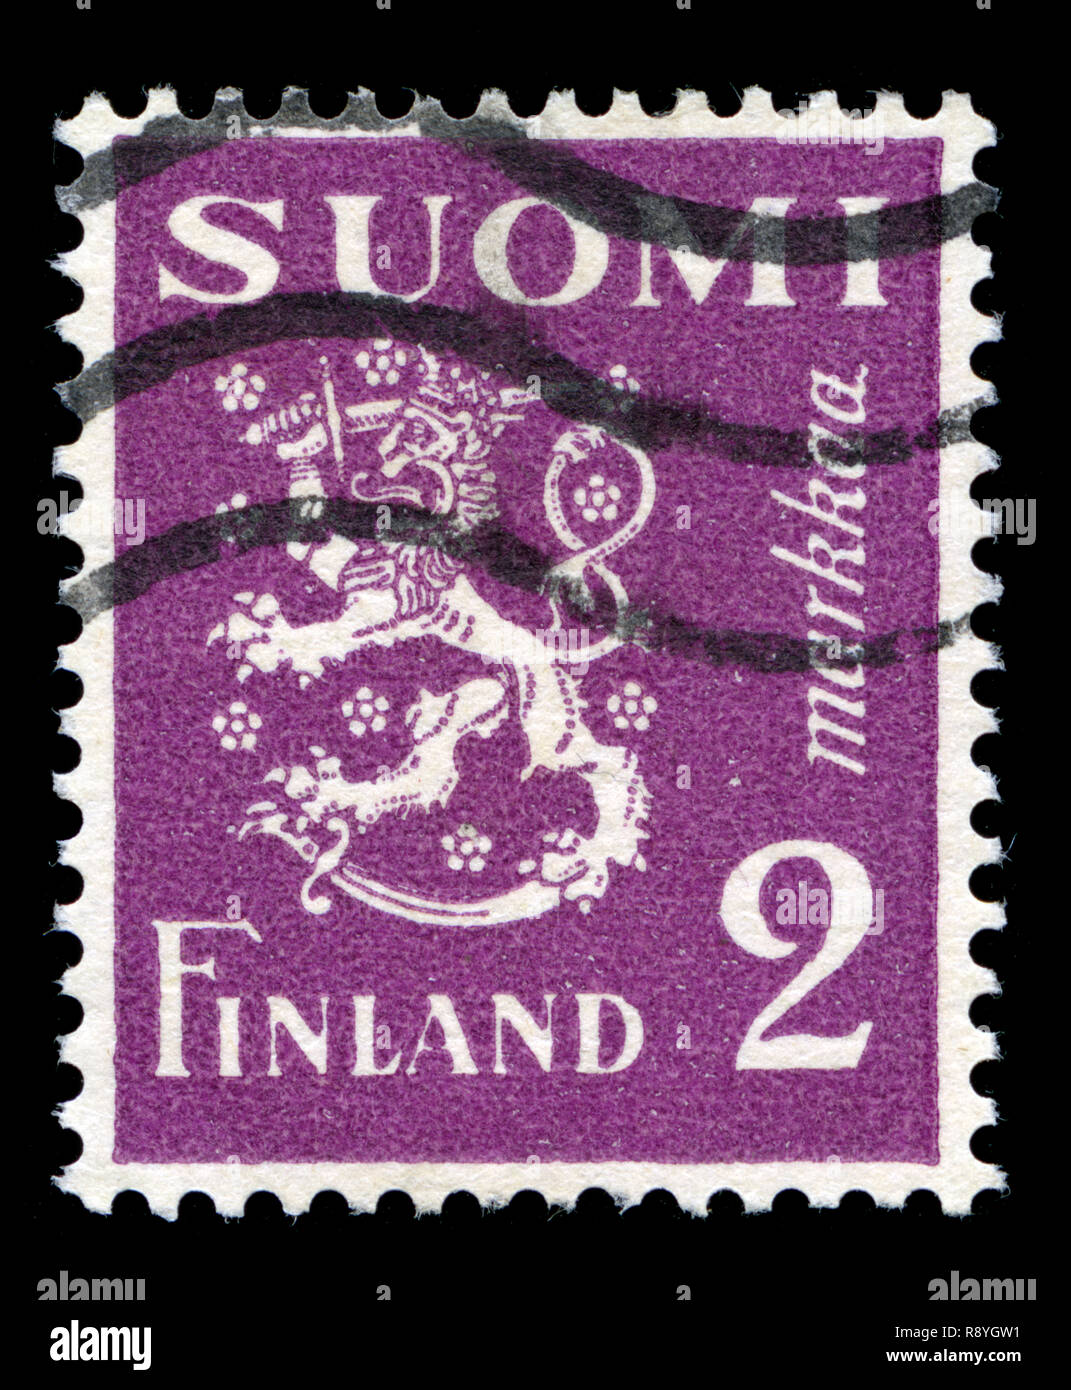 Timbre-poste de la Finlande dans le modèle 1930 Lion série émise en 1932 Banque D'Images